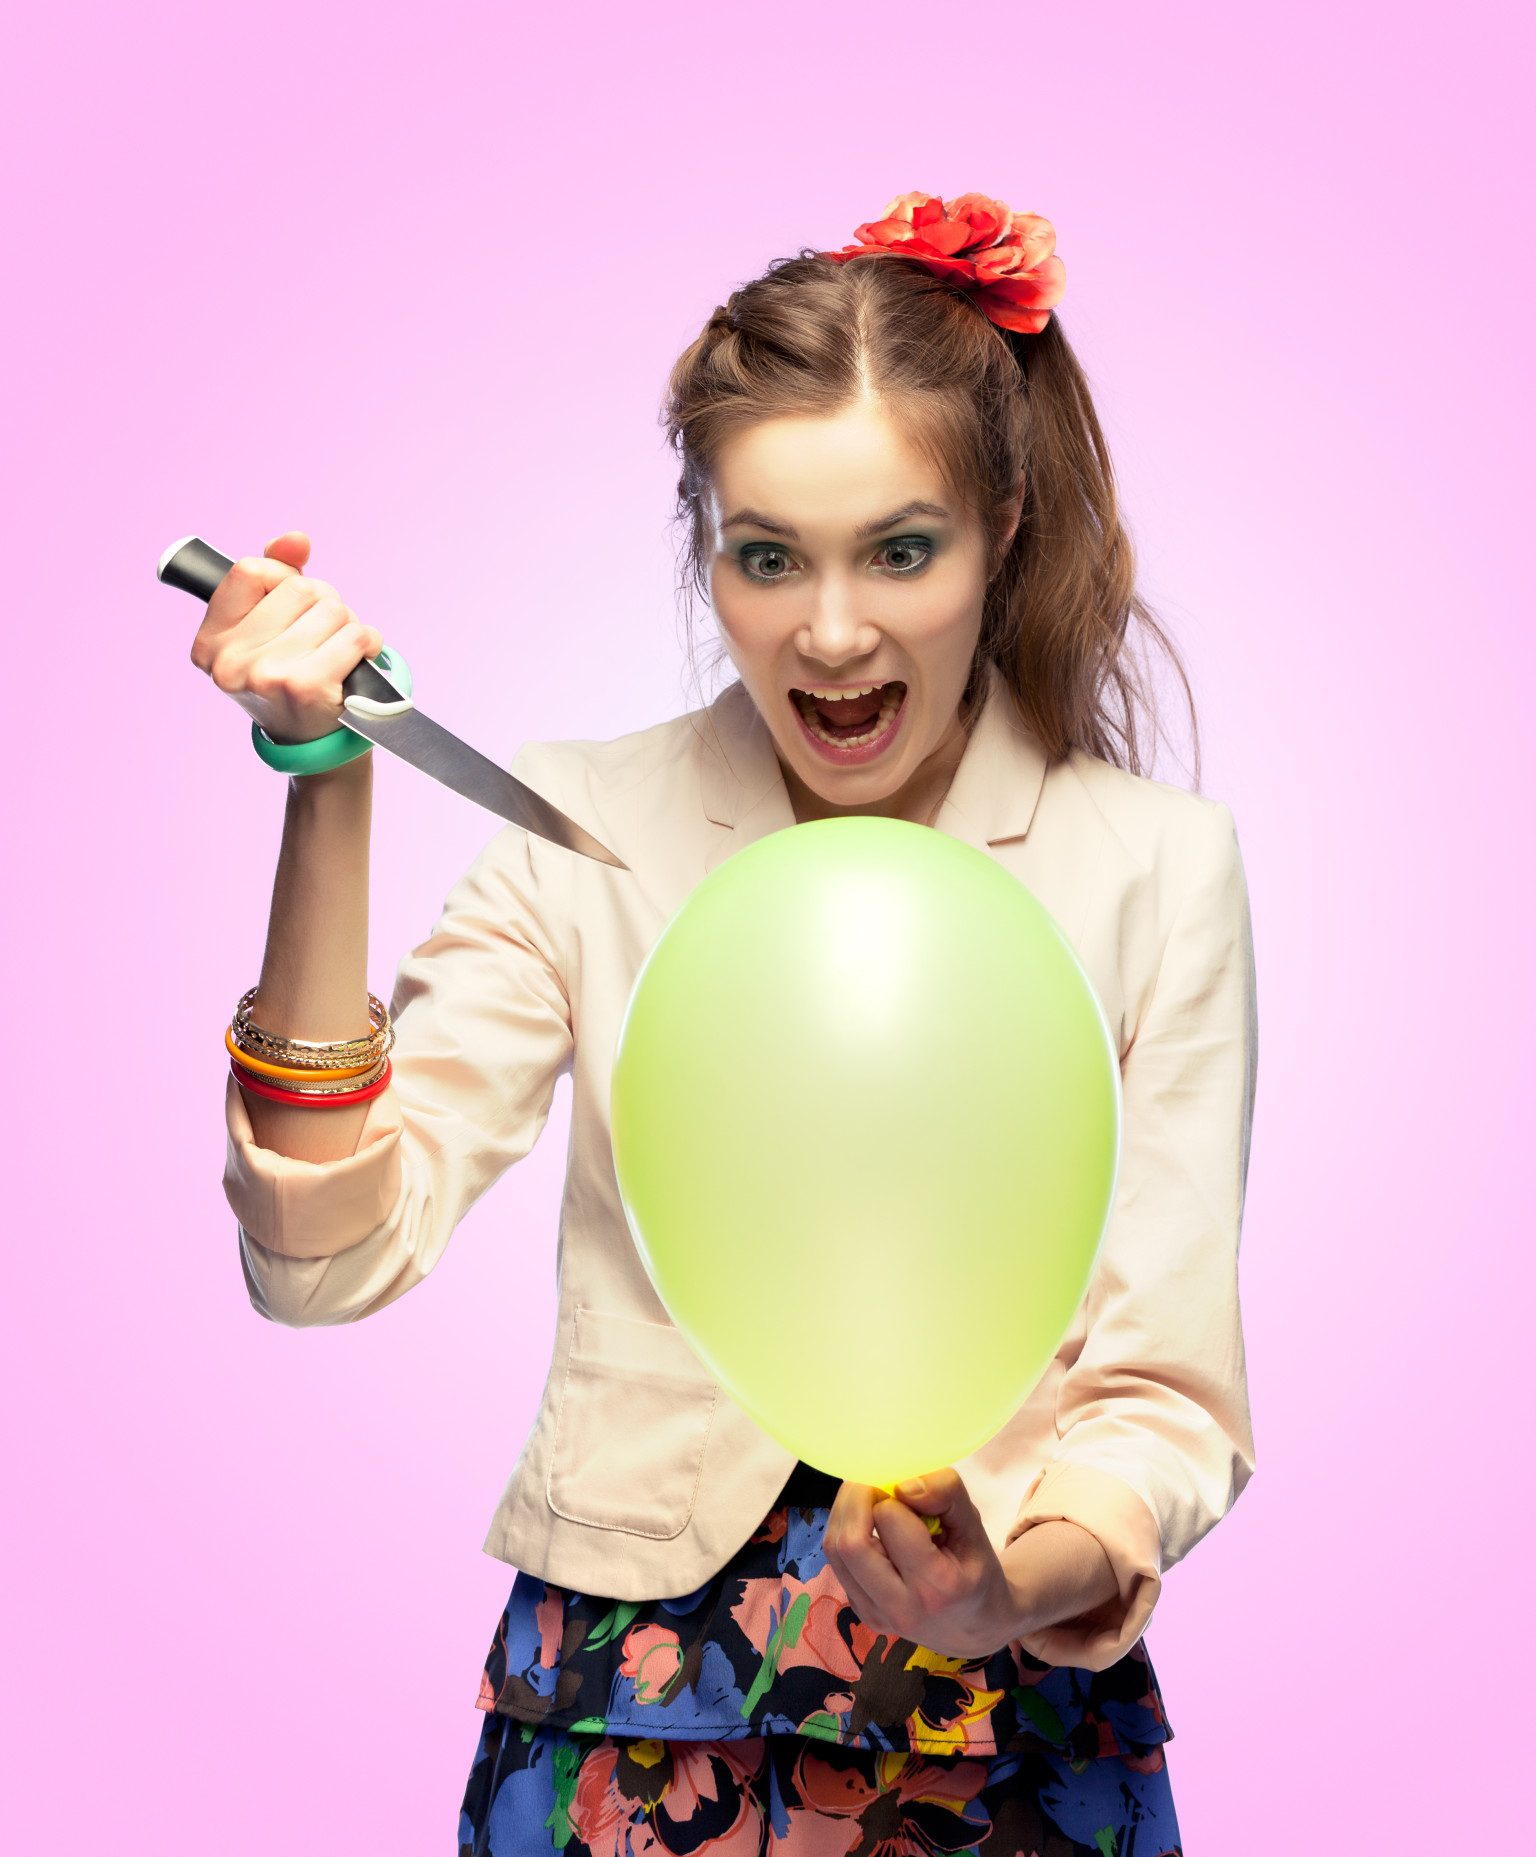 Balloon popping girls. Воздушные шары убийцы. Лопает шарики ножами. Фото злой девочки с шариками.